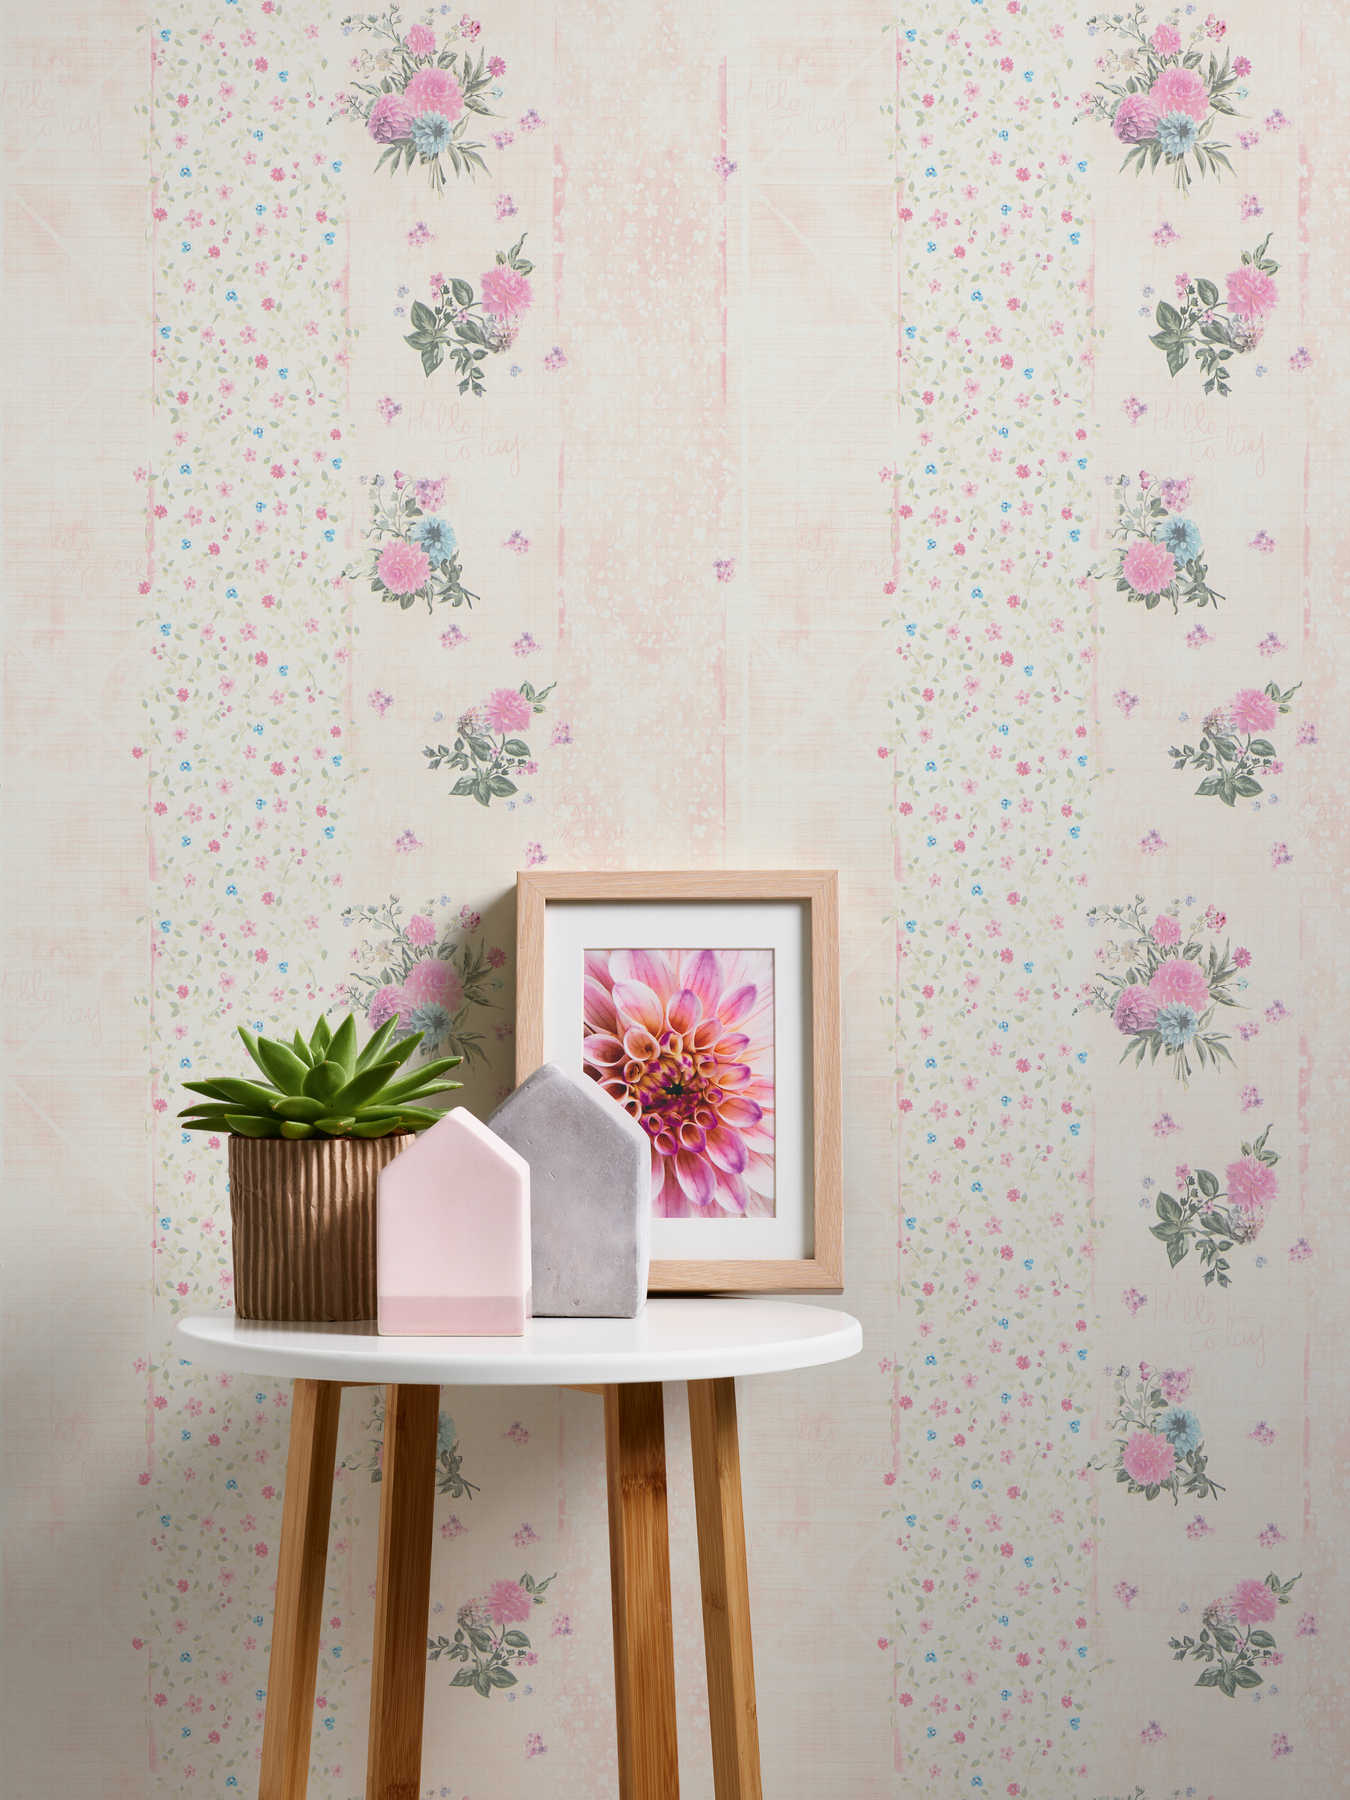             Papel pintado floral con diseño de rayas - multicolor, rosa
        